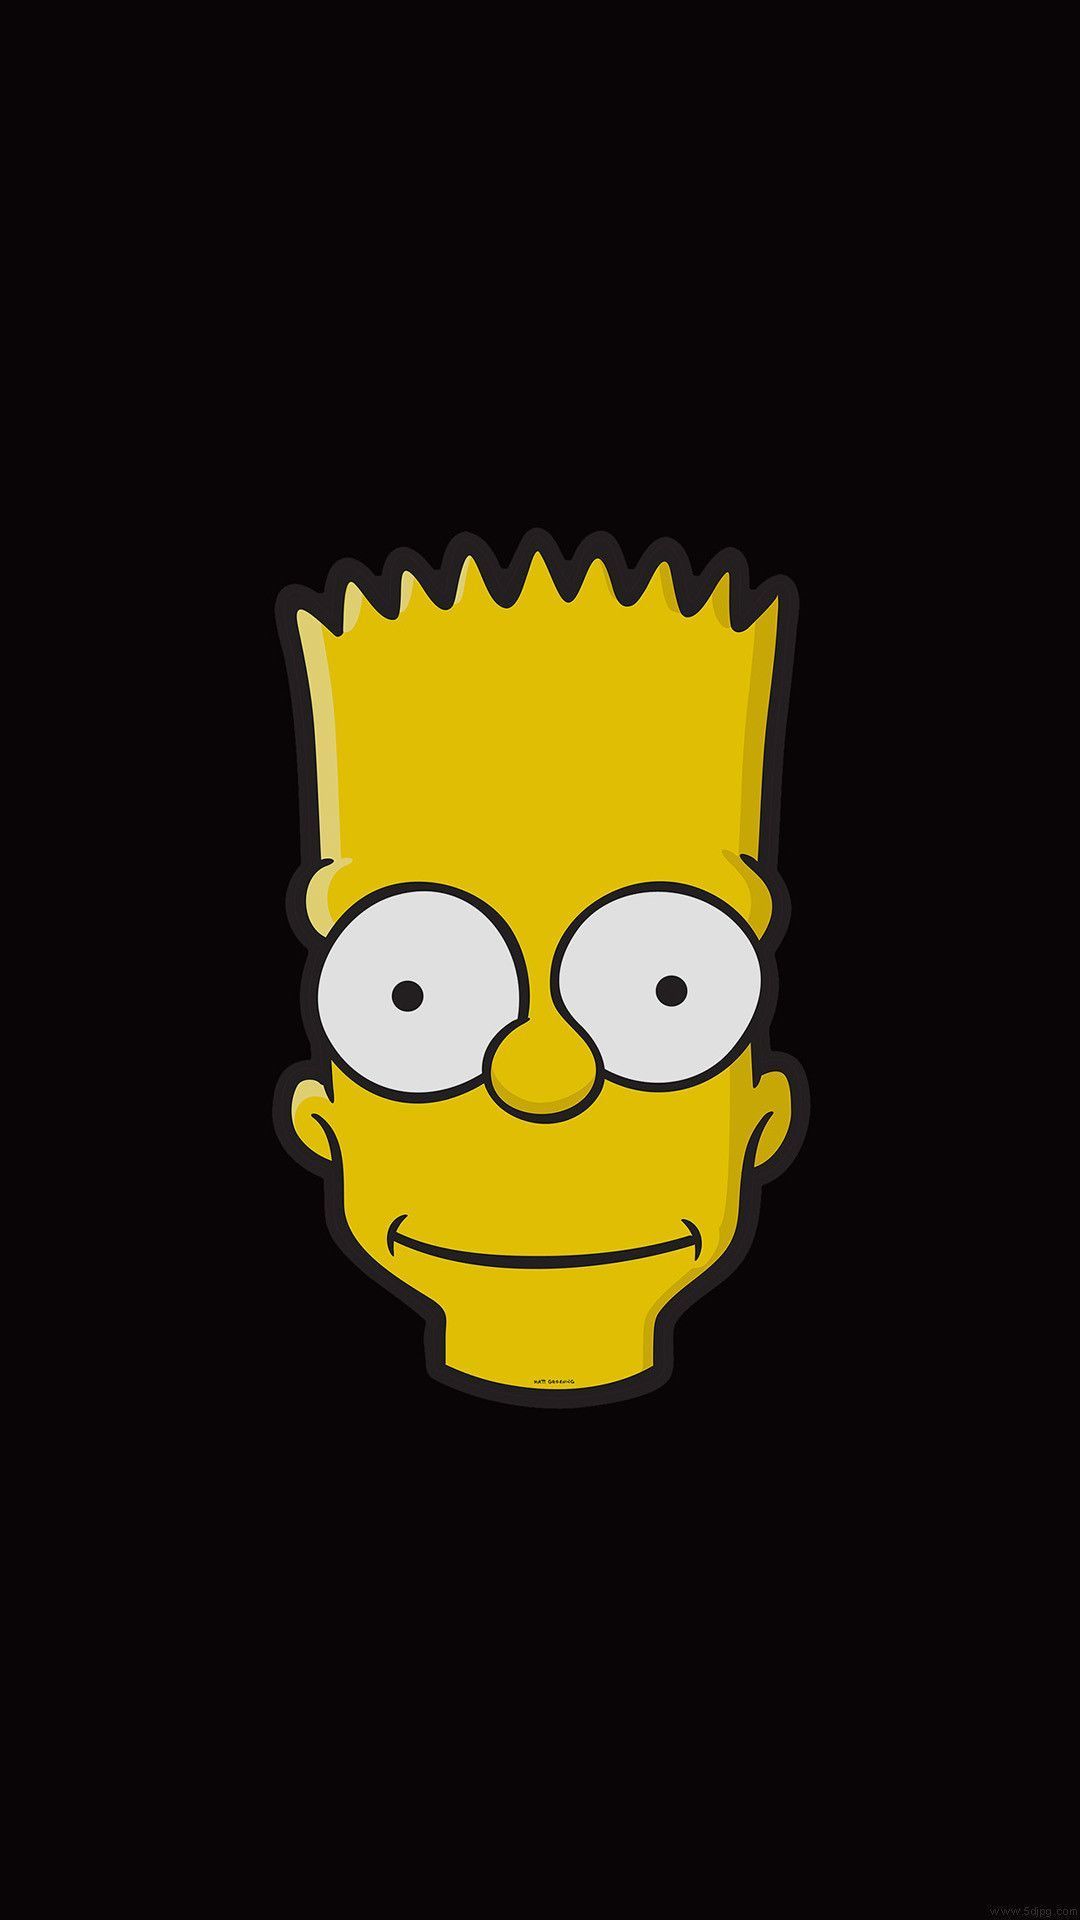 Simpsons Wallpaper Download di 2020. Menggambar emoji, Kartun, Ilustrasi karakter